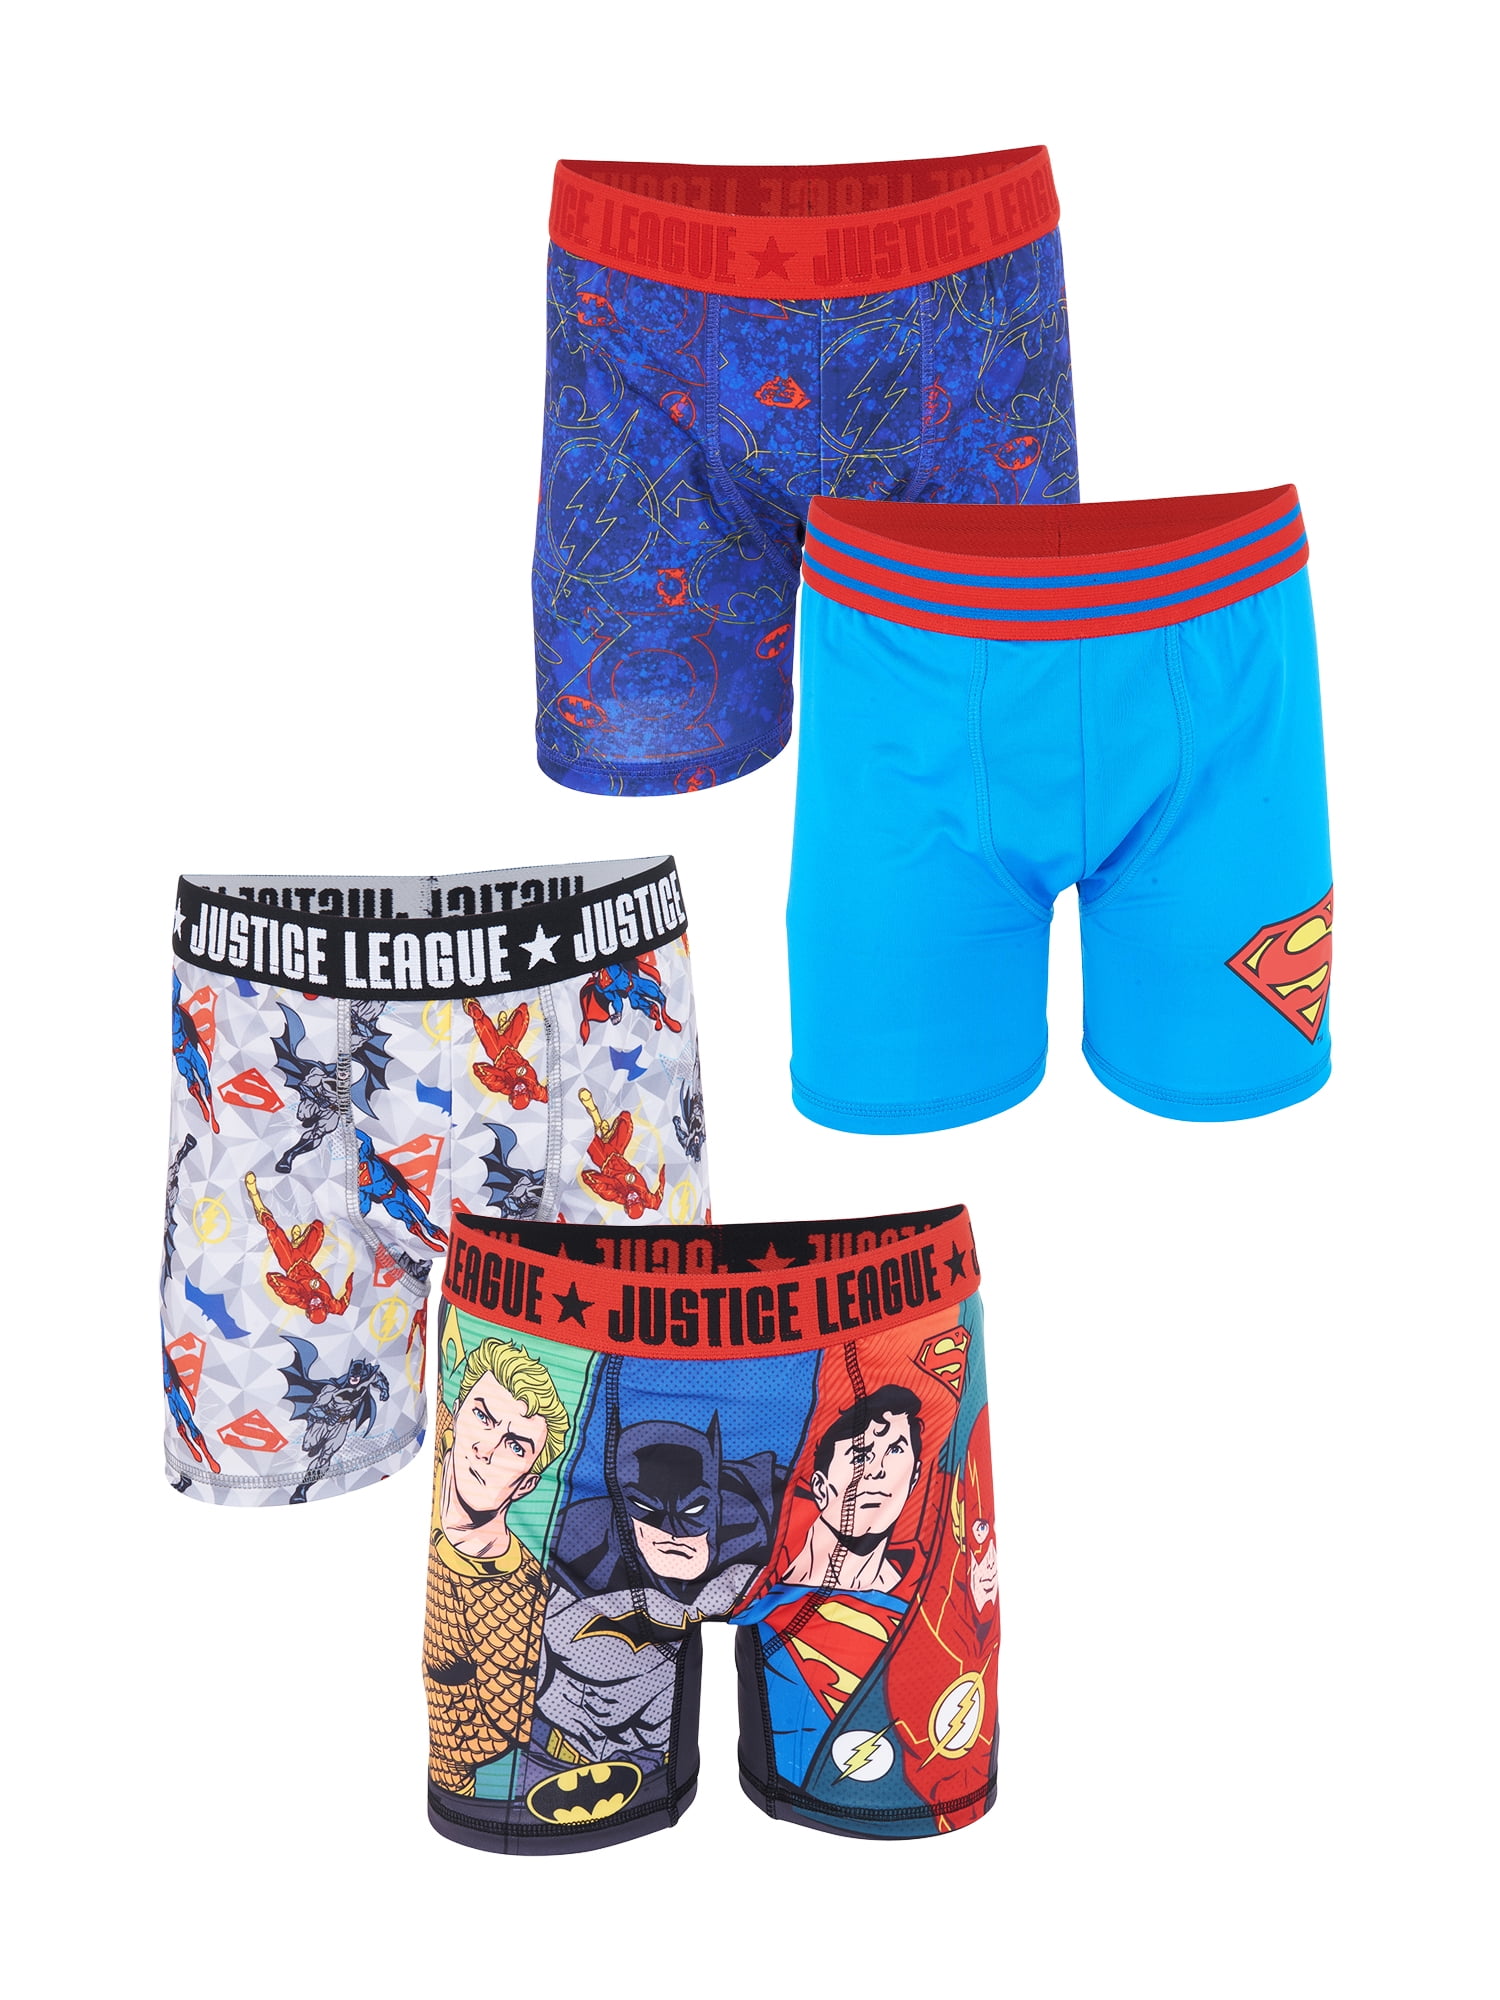 Chill Boys Fun Underwear Boxer Briefs 4-Pack